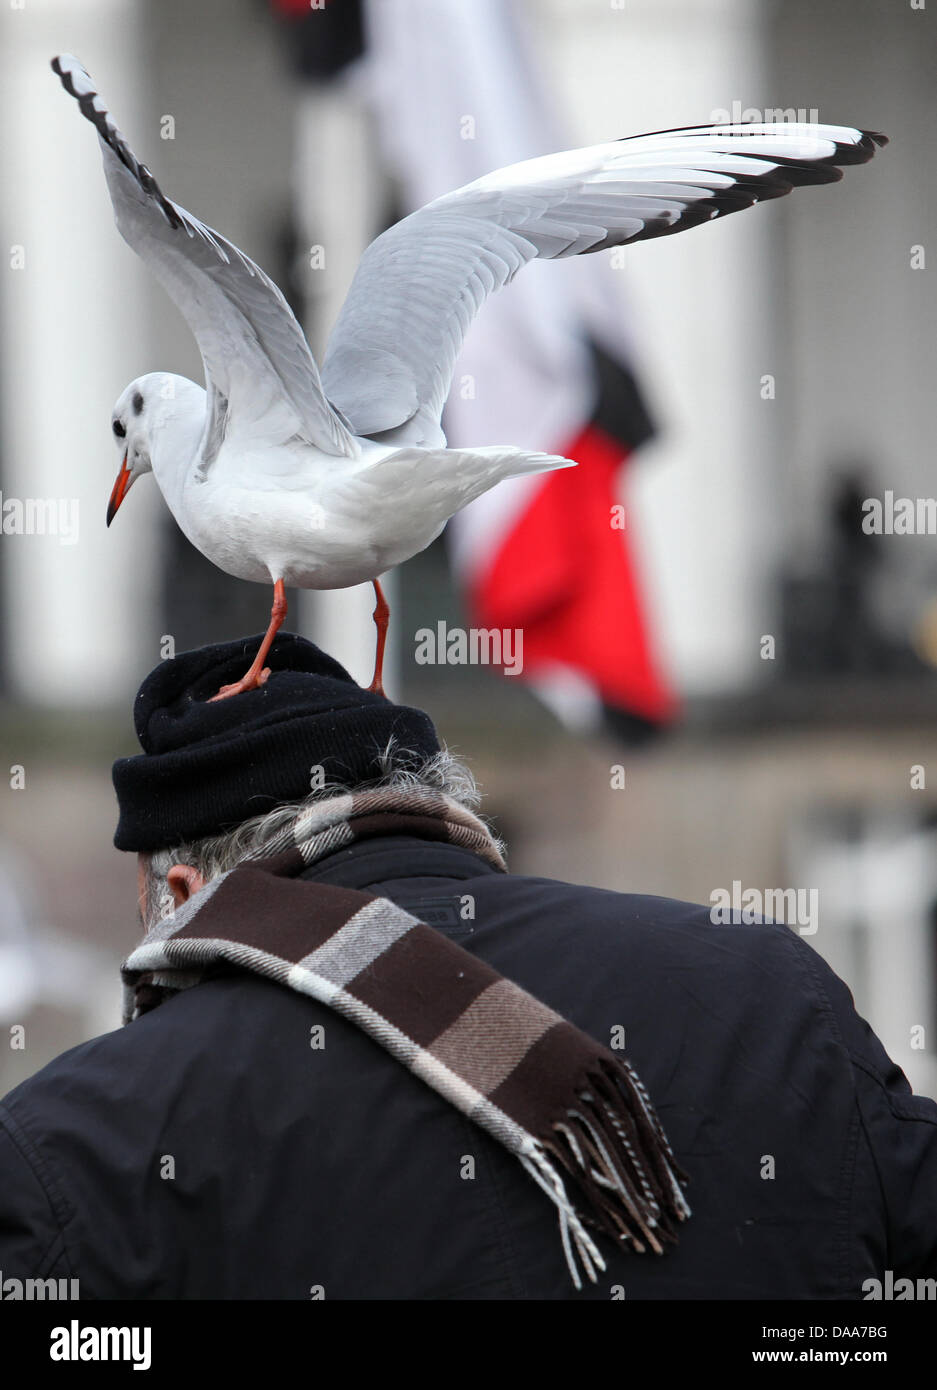 Während ein Mann am Mittwoch (12.01.2011) an der Binnenalster in Hamburg Vögel füttert, lässt sich ein Möwe auf dem Kopf des Mannes nieder und beobachtet das Treiben von oben. Das Wetter soll in den kommenden Tagen im Norden regnerisch mit Temperaturen bis 6 Grad werden. Foto: Bodo segna dpa/lno Foto Stock